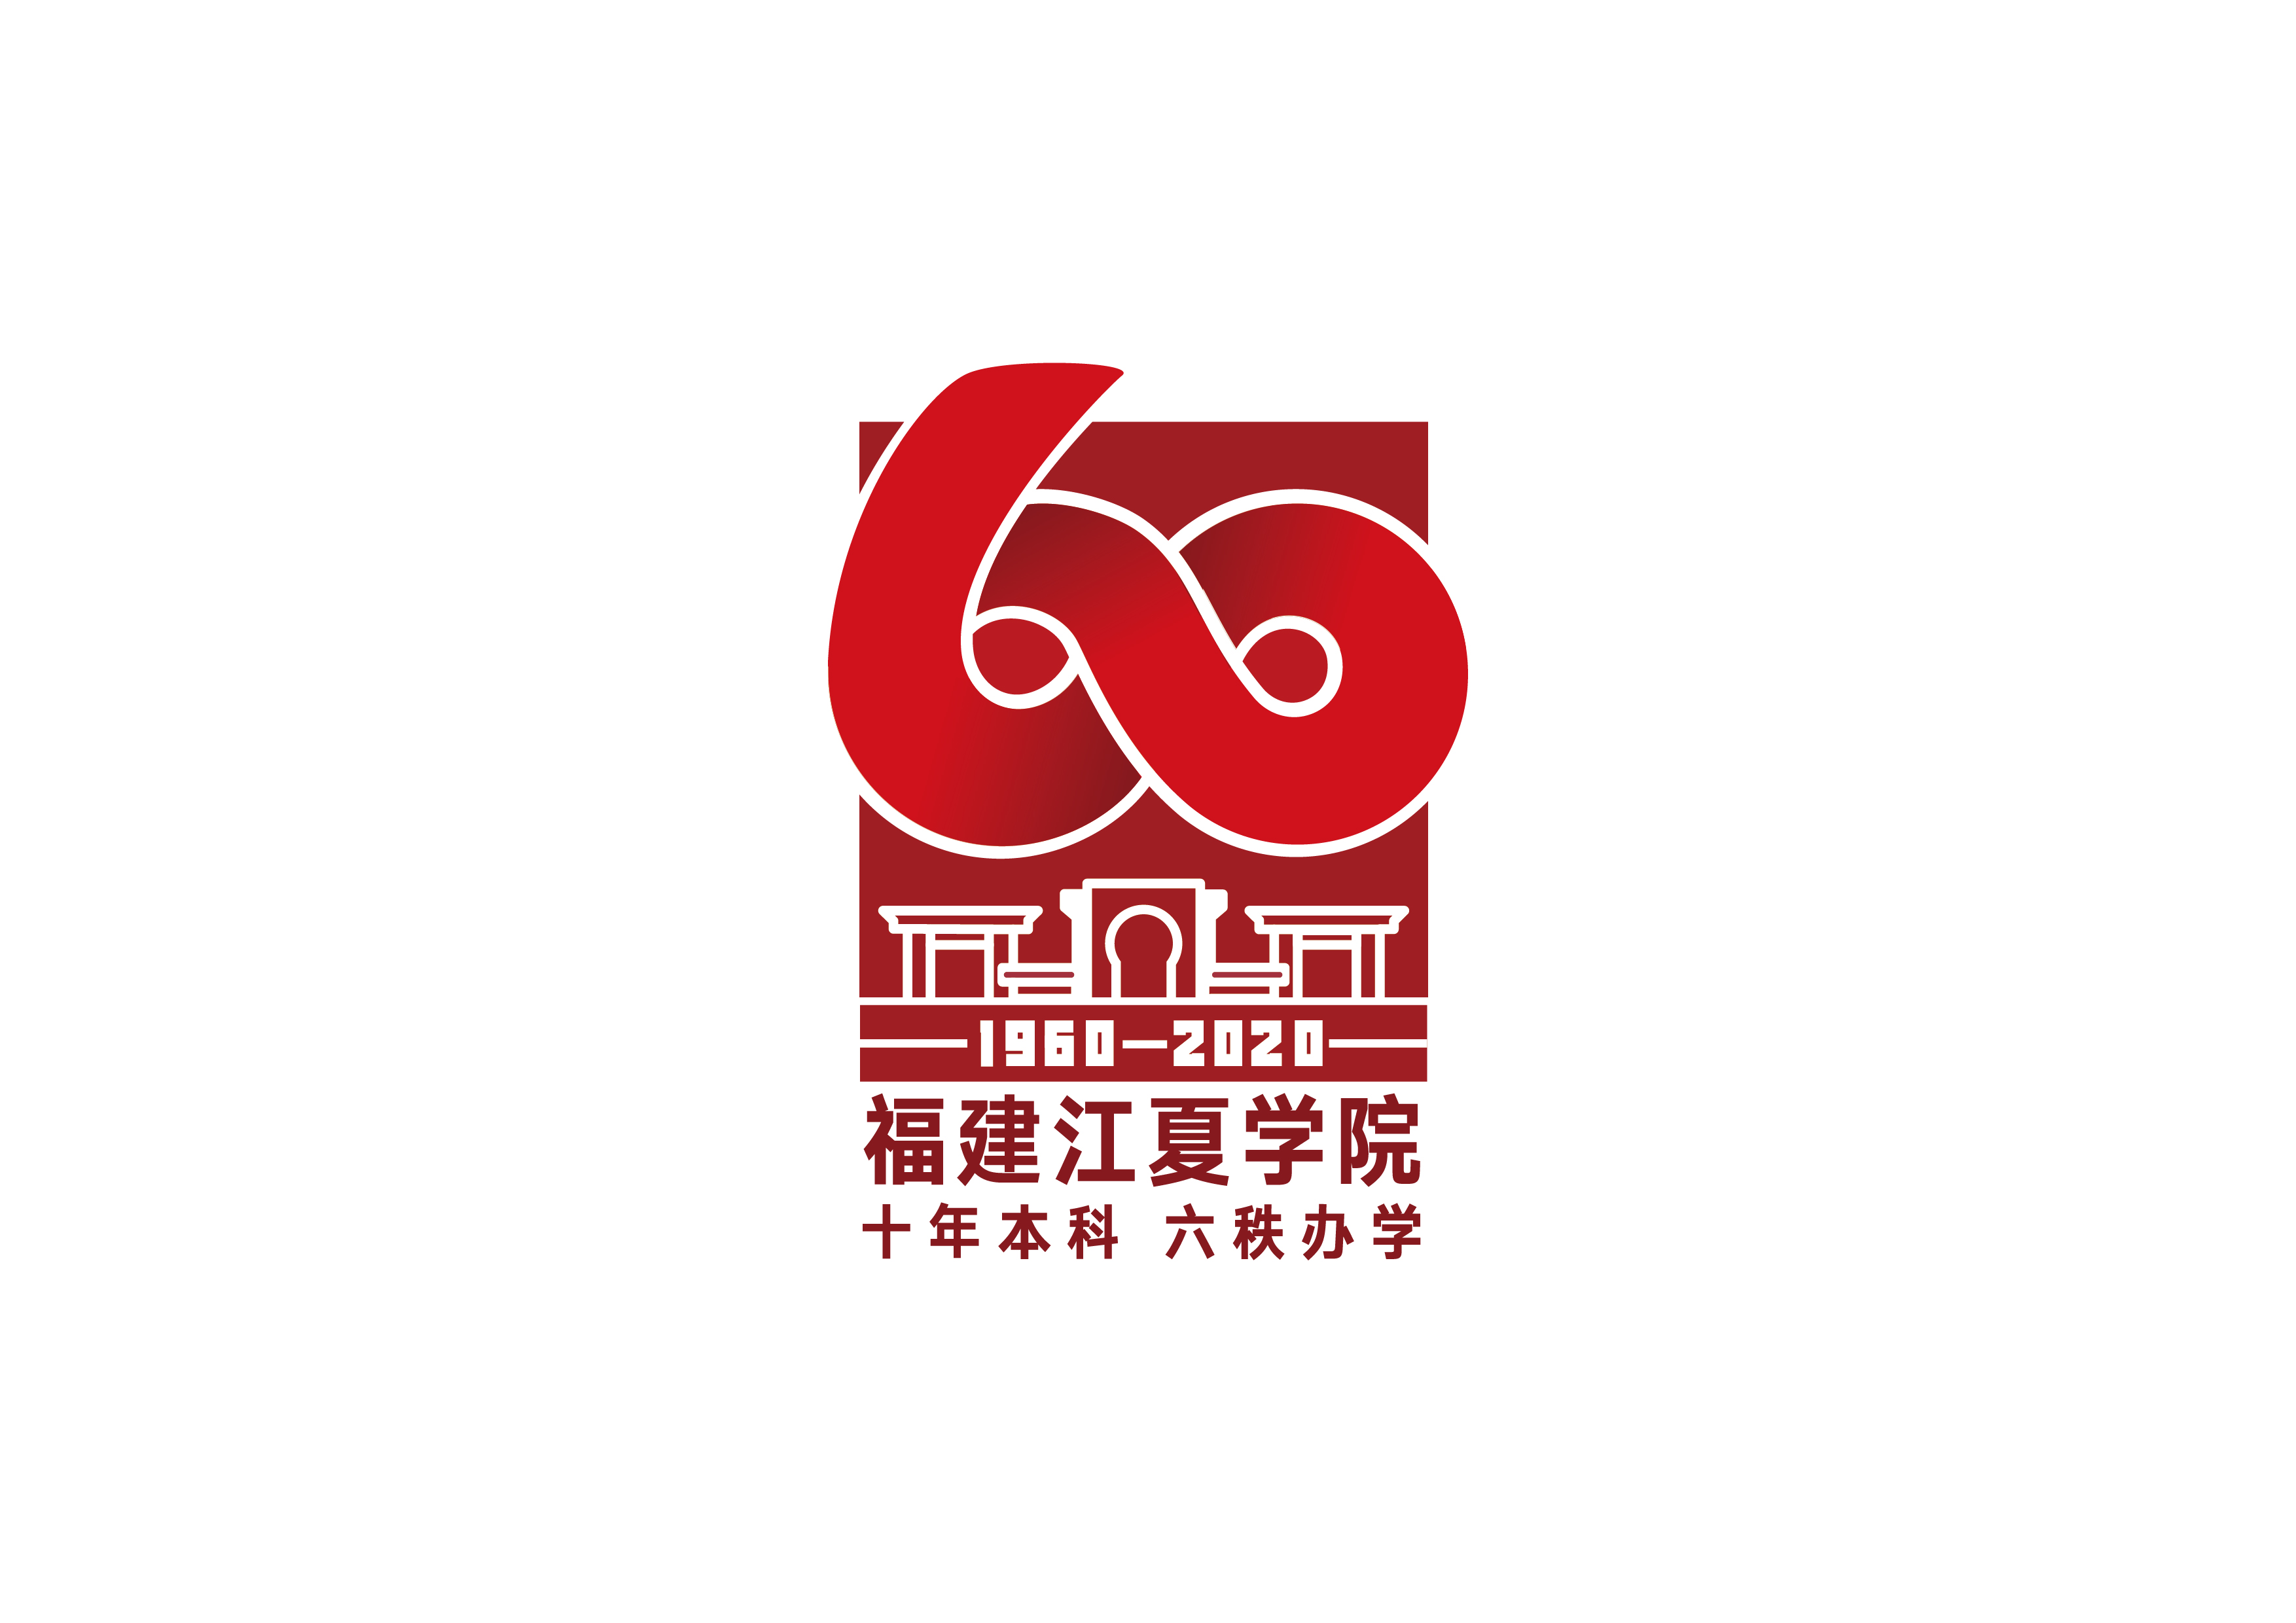 学校十周年logo图片